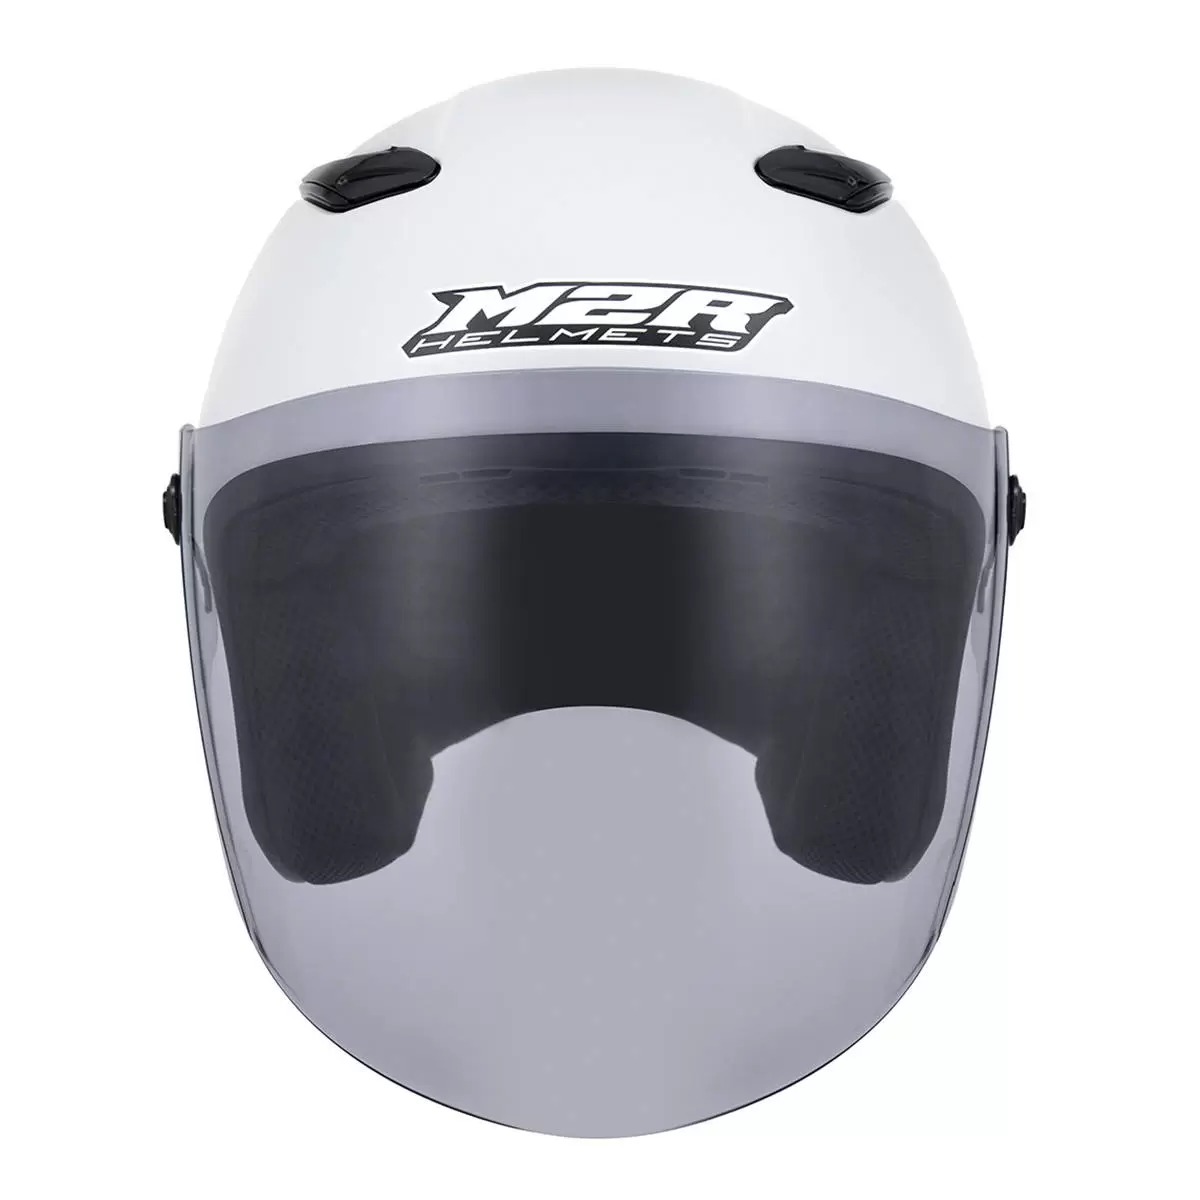 M2R 3/4罩安全帽 騎乘機車用防護頭盔 M-700 XL